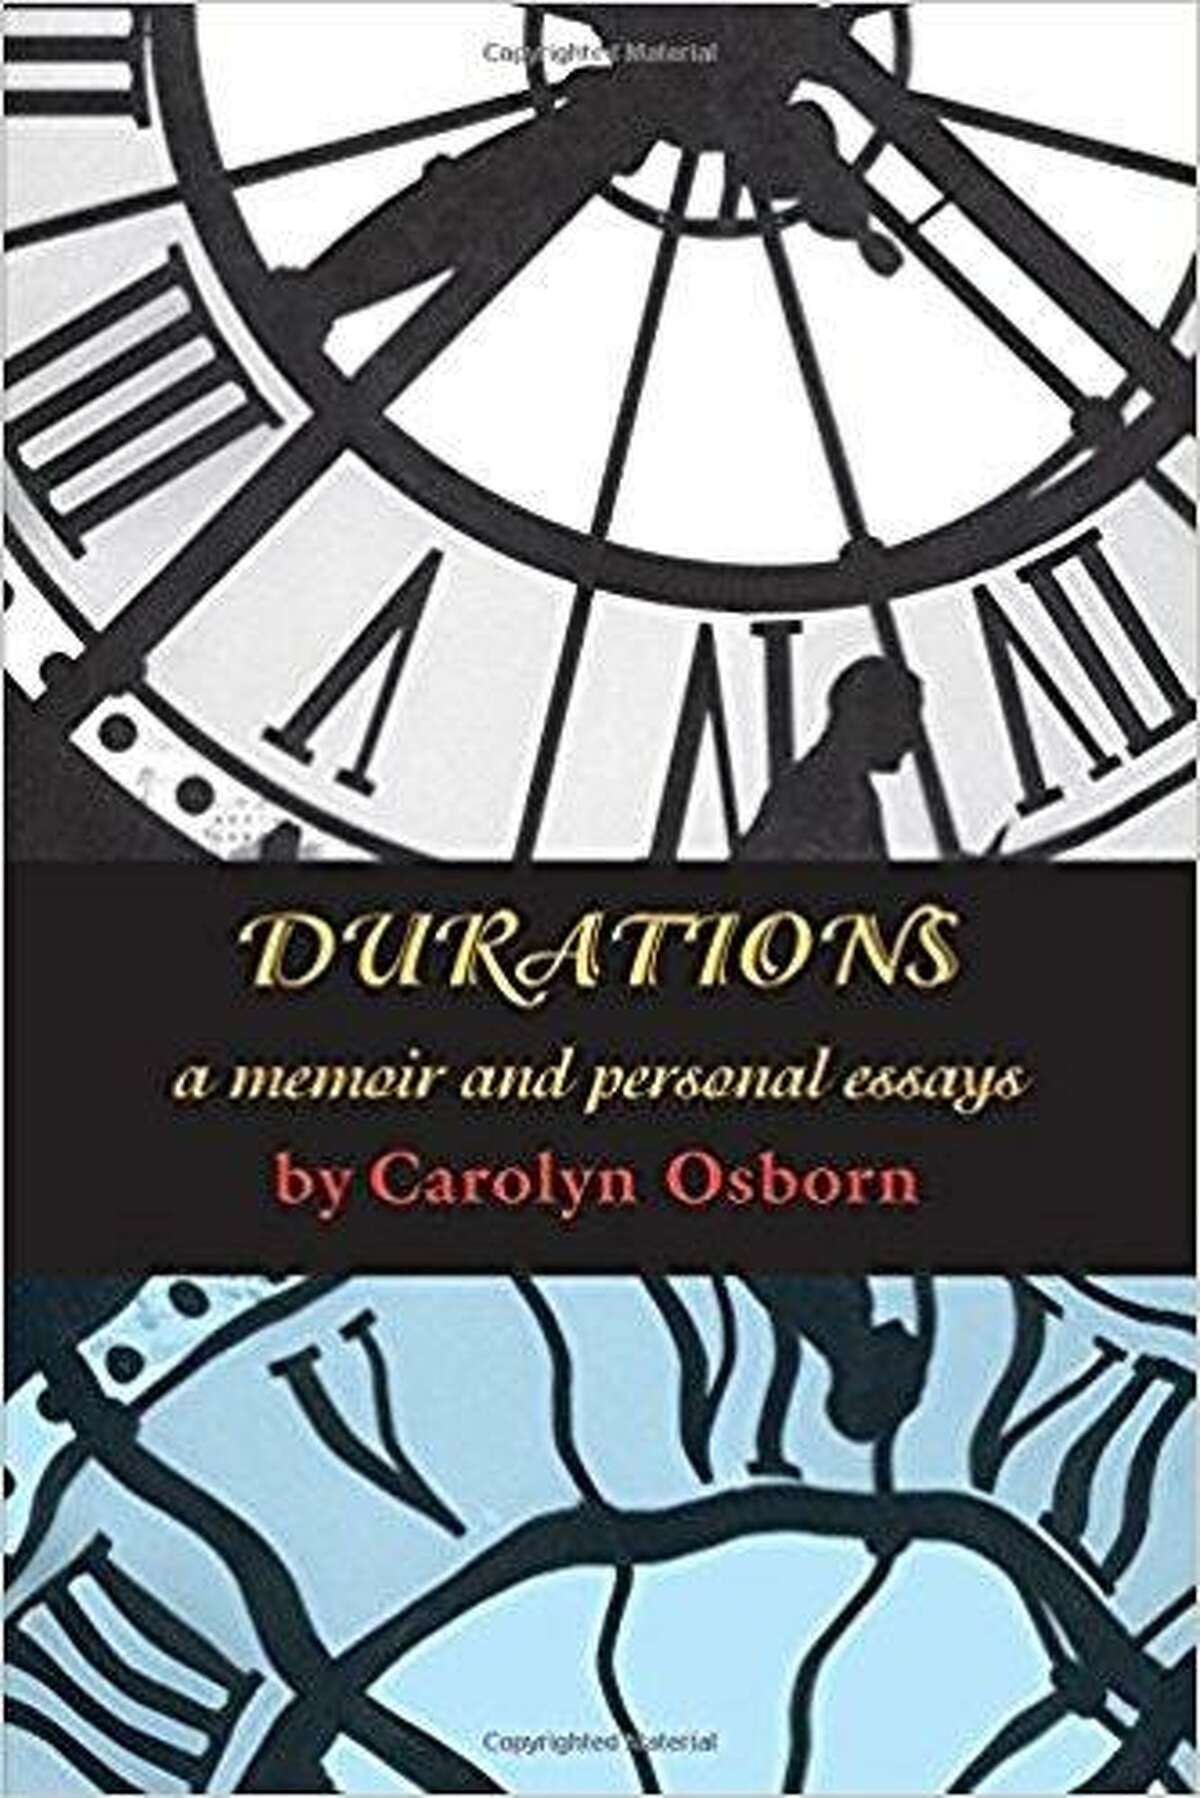 “Durations: A Memoir and Personal Essays” by Carolyn Osborn